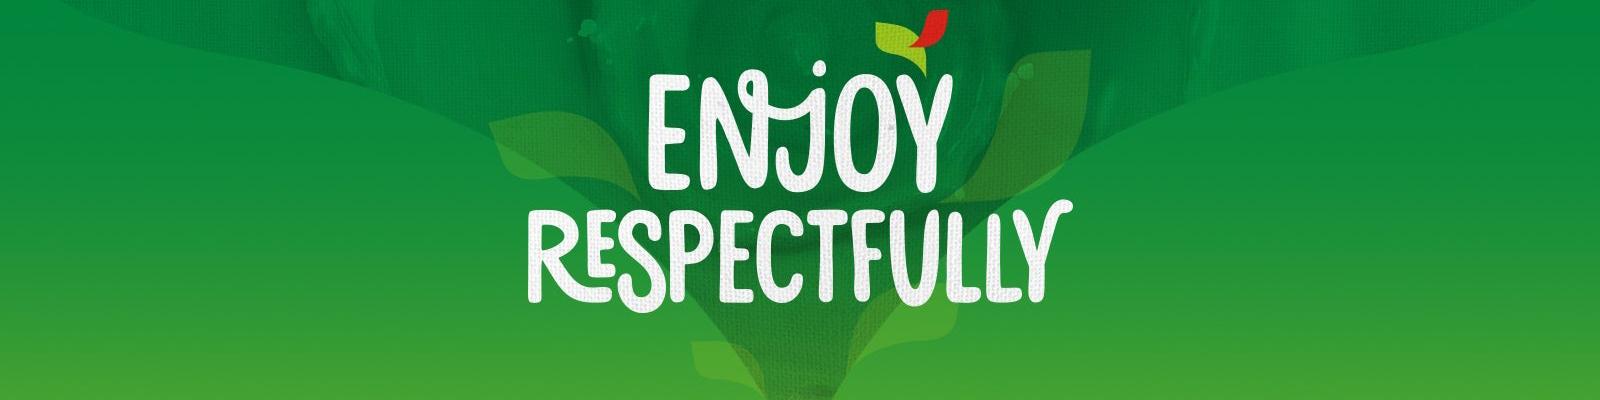 Enjoy Respectfully